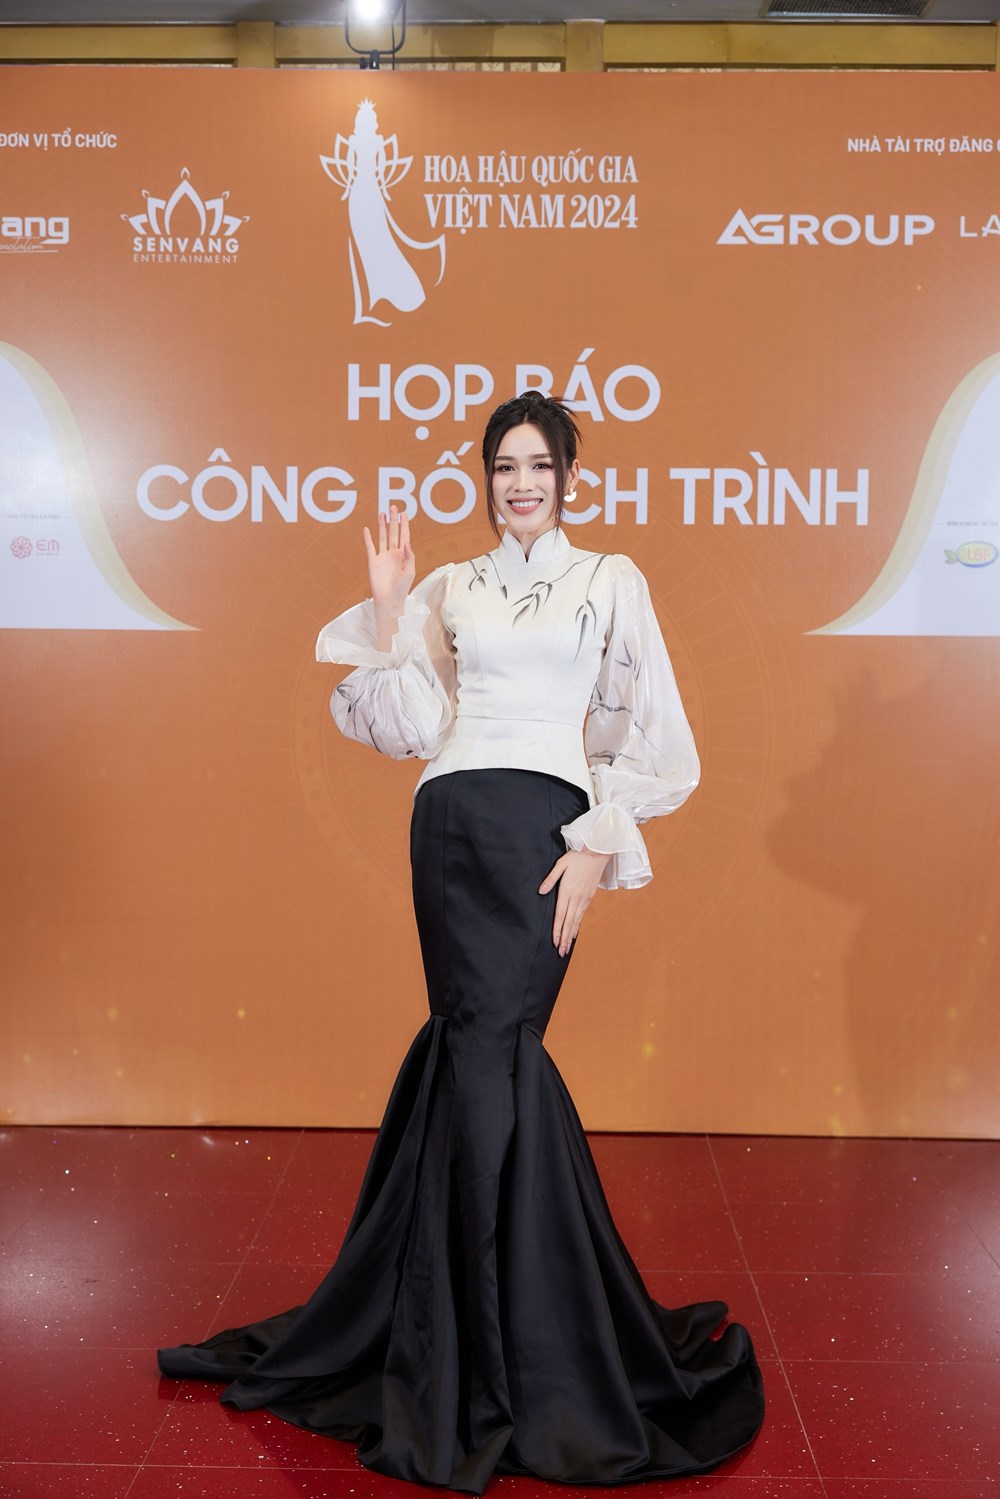 Cuộc thi Hoa hậu Quốc gia Việt Nam trao tặng quà và học bổng cho Hội LHPN Hà Nội  - ảnh 6